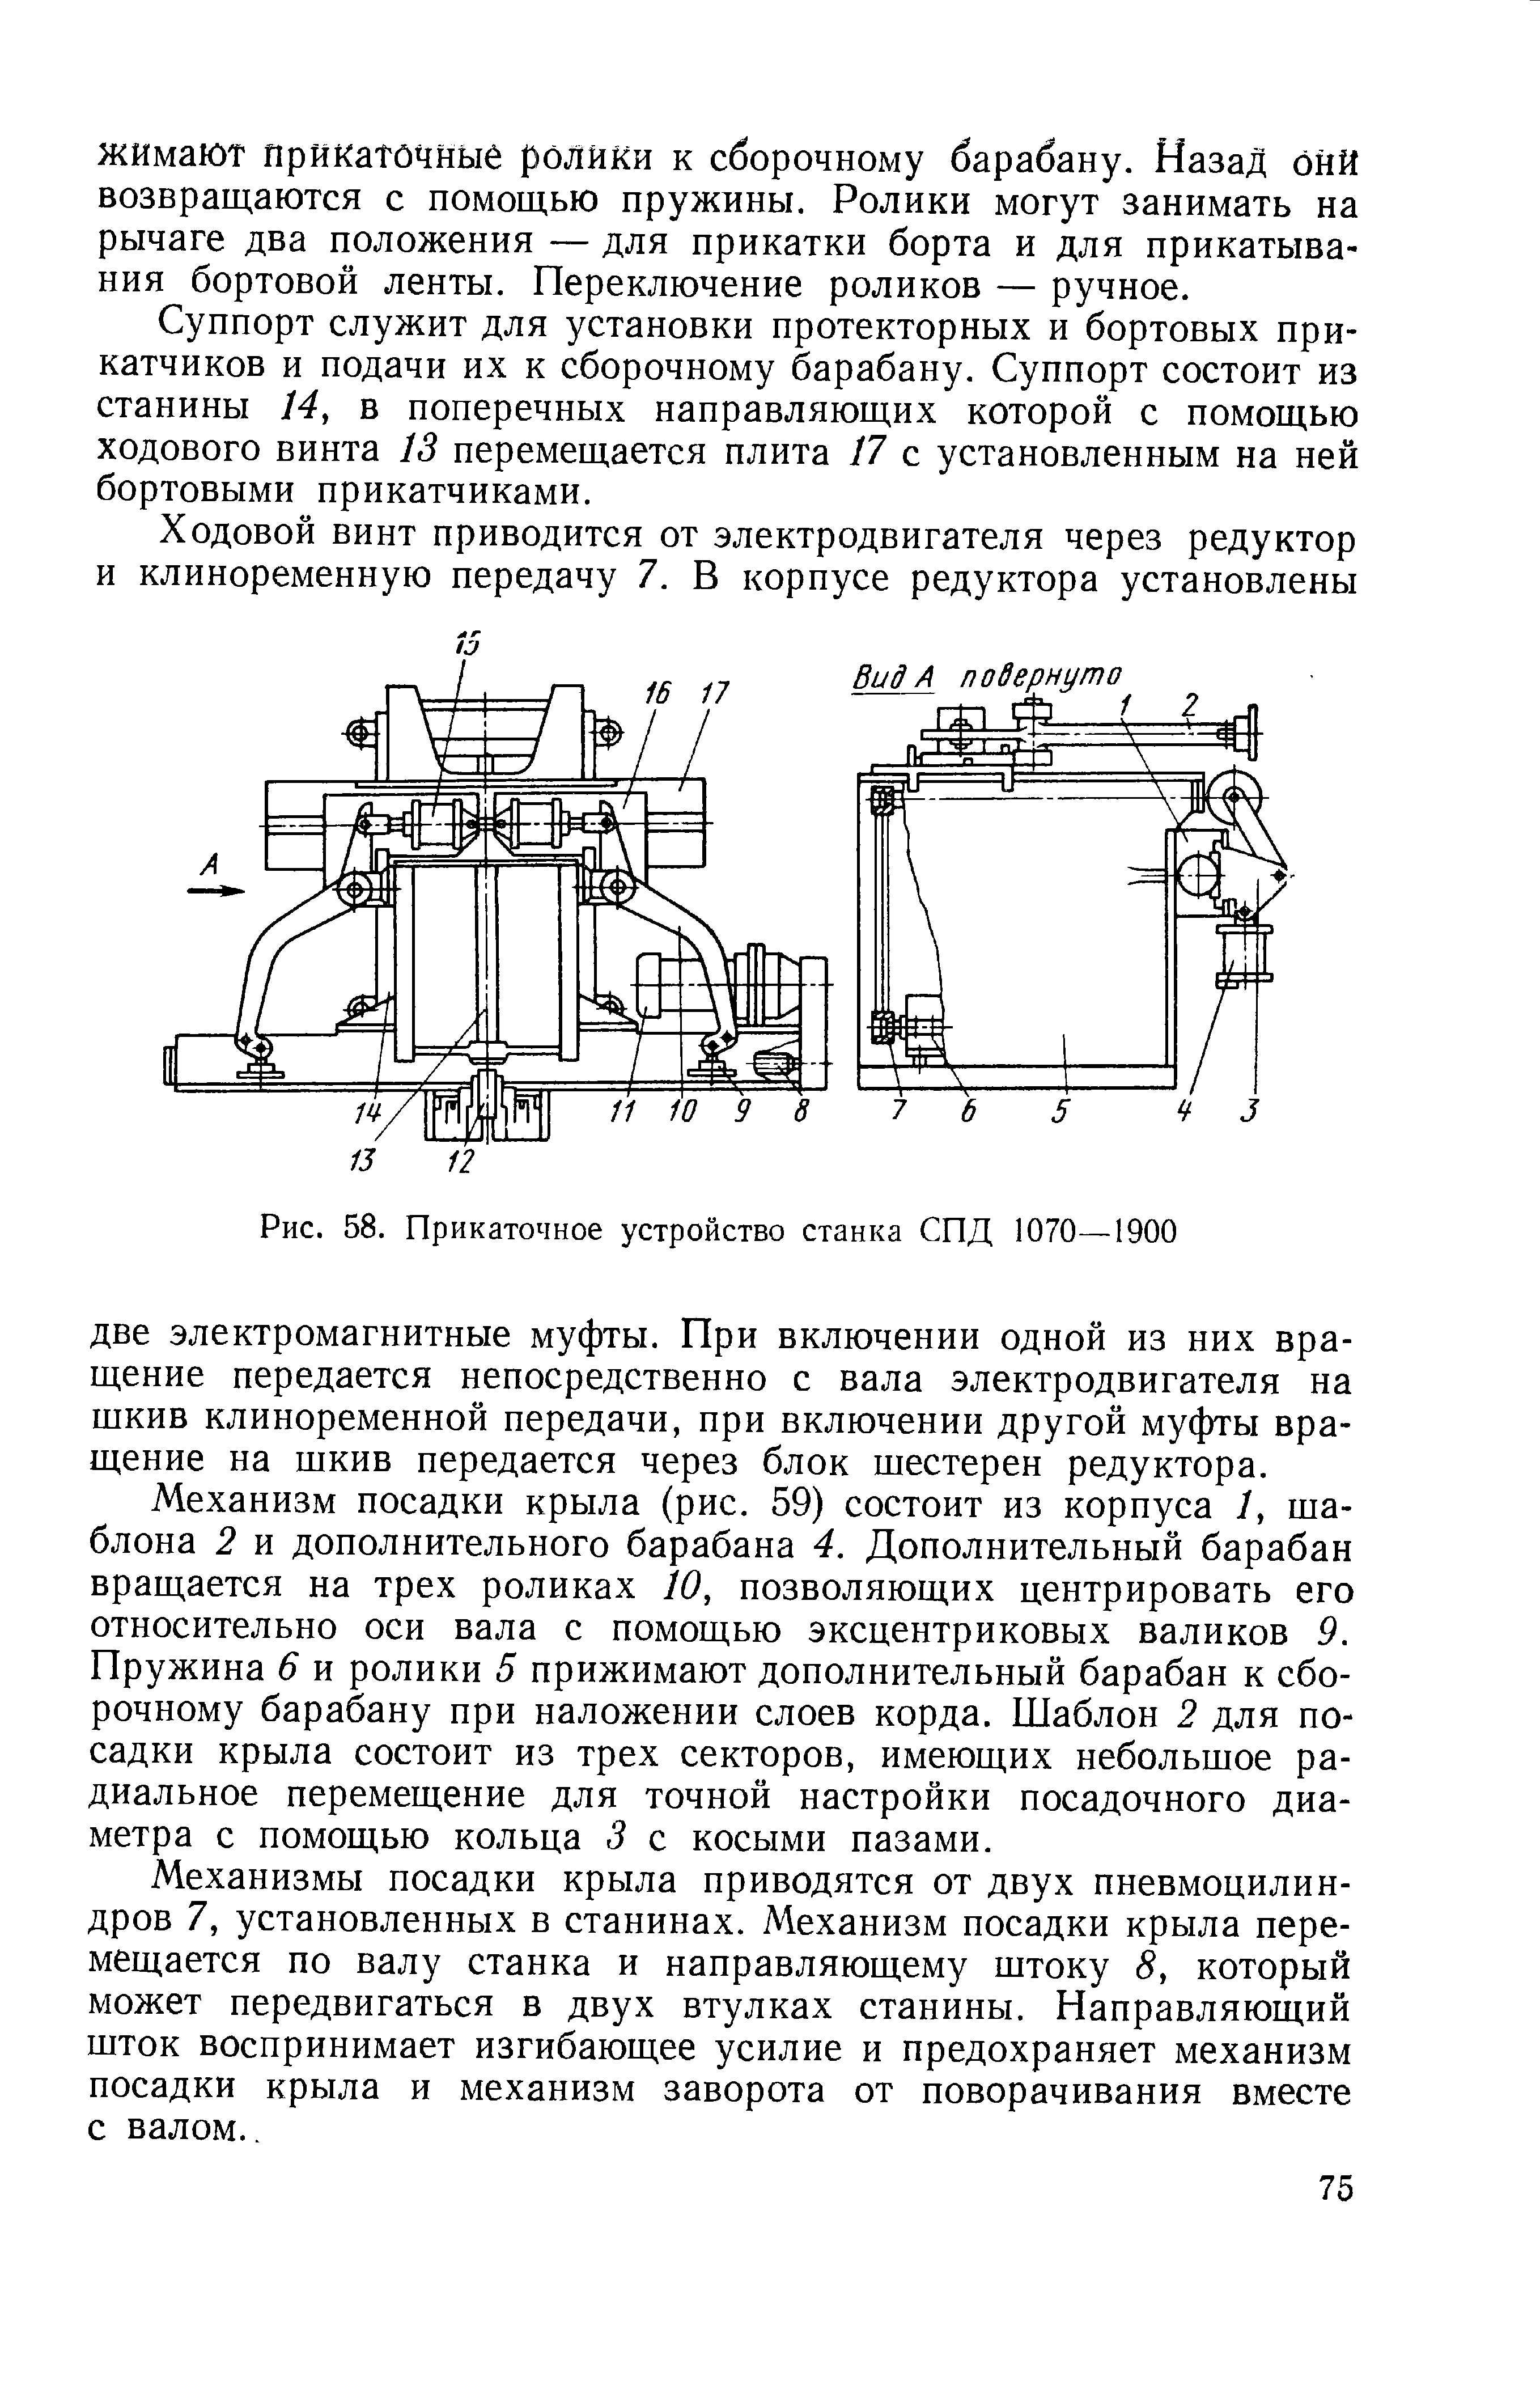 Рис. 58. Прикаточное устройство станка СПД 1070—1900
